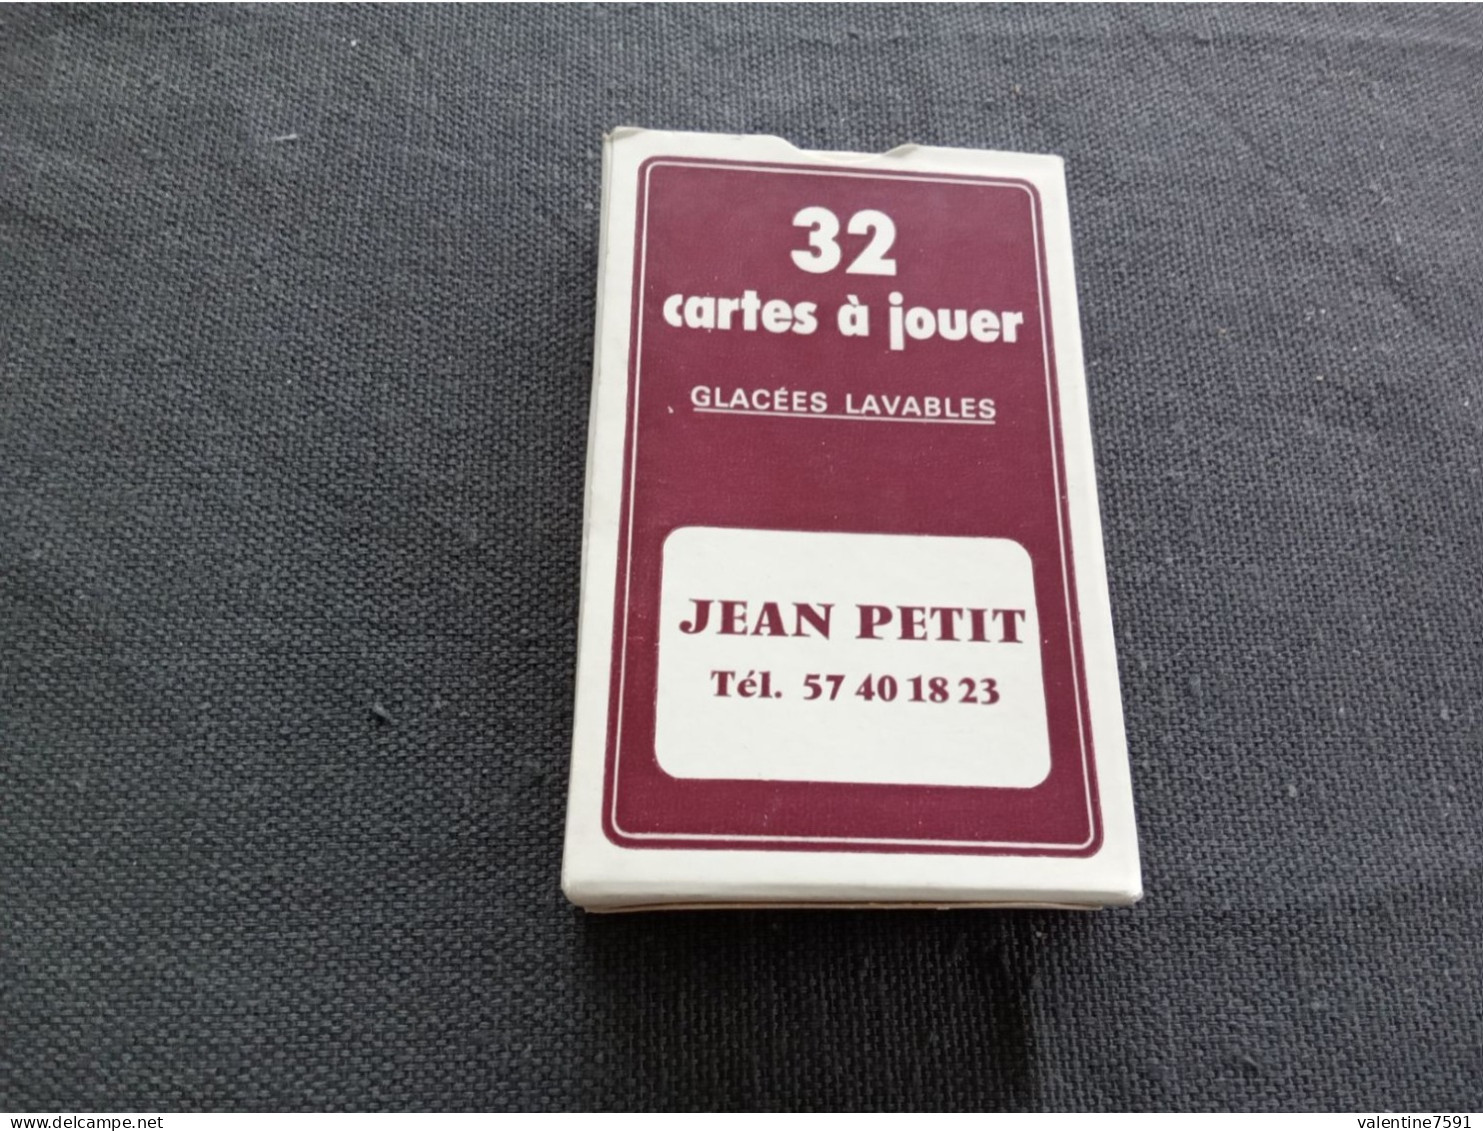 Jeu 32  Cartes    " Vignobles  Jean PETIT, St Emilion   "    Bon état     Net  4 - Cartes à Jouer Classiques